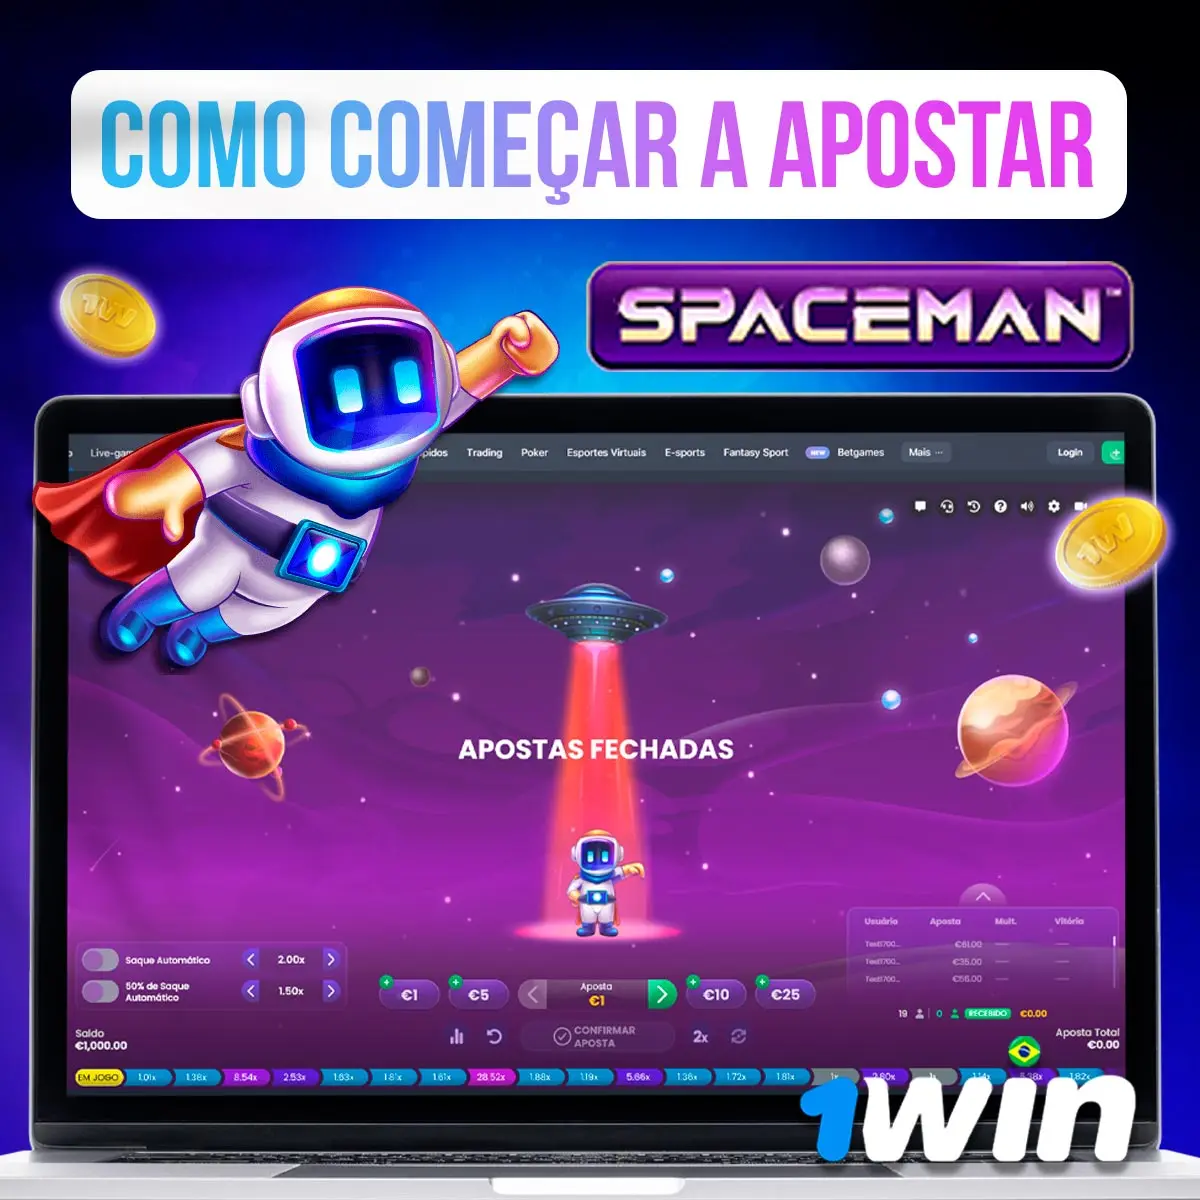 Spaceman Apostas App Como Ganhar Dinheiro - Diário do Sertão